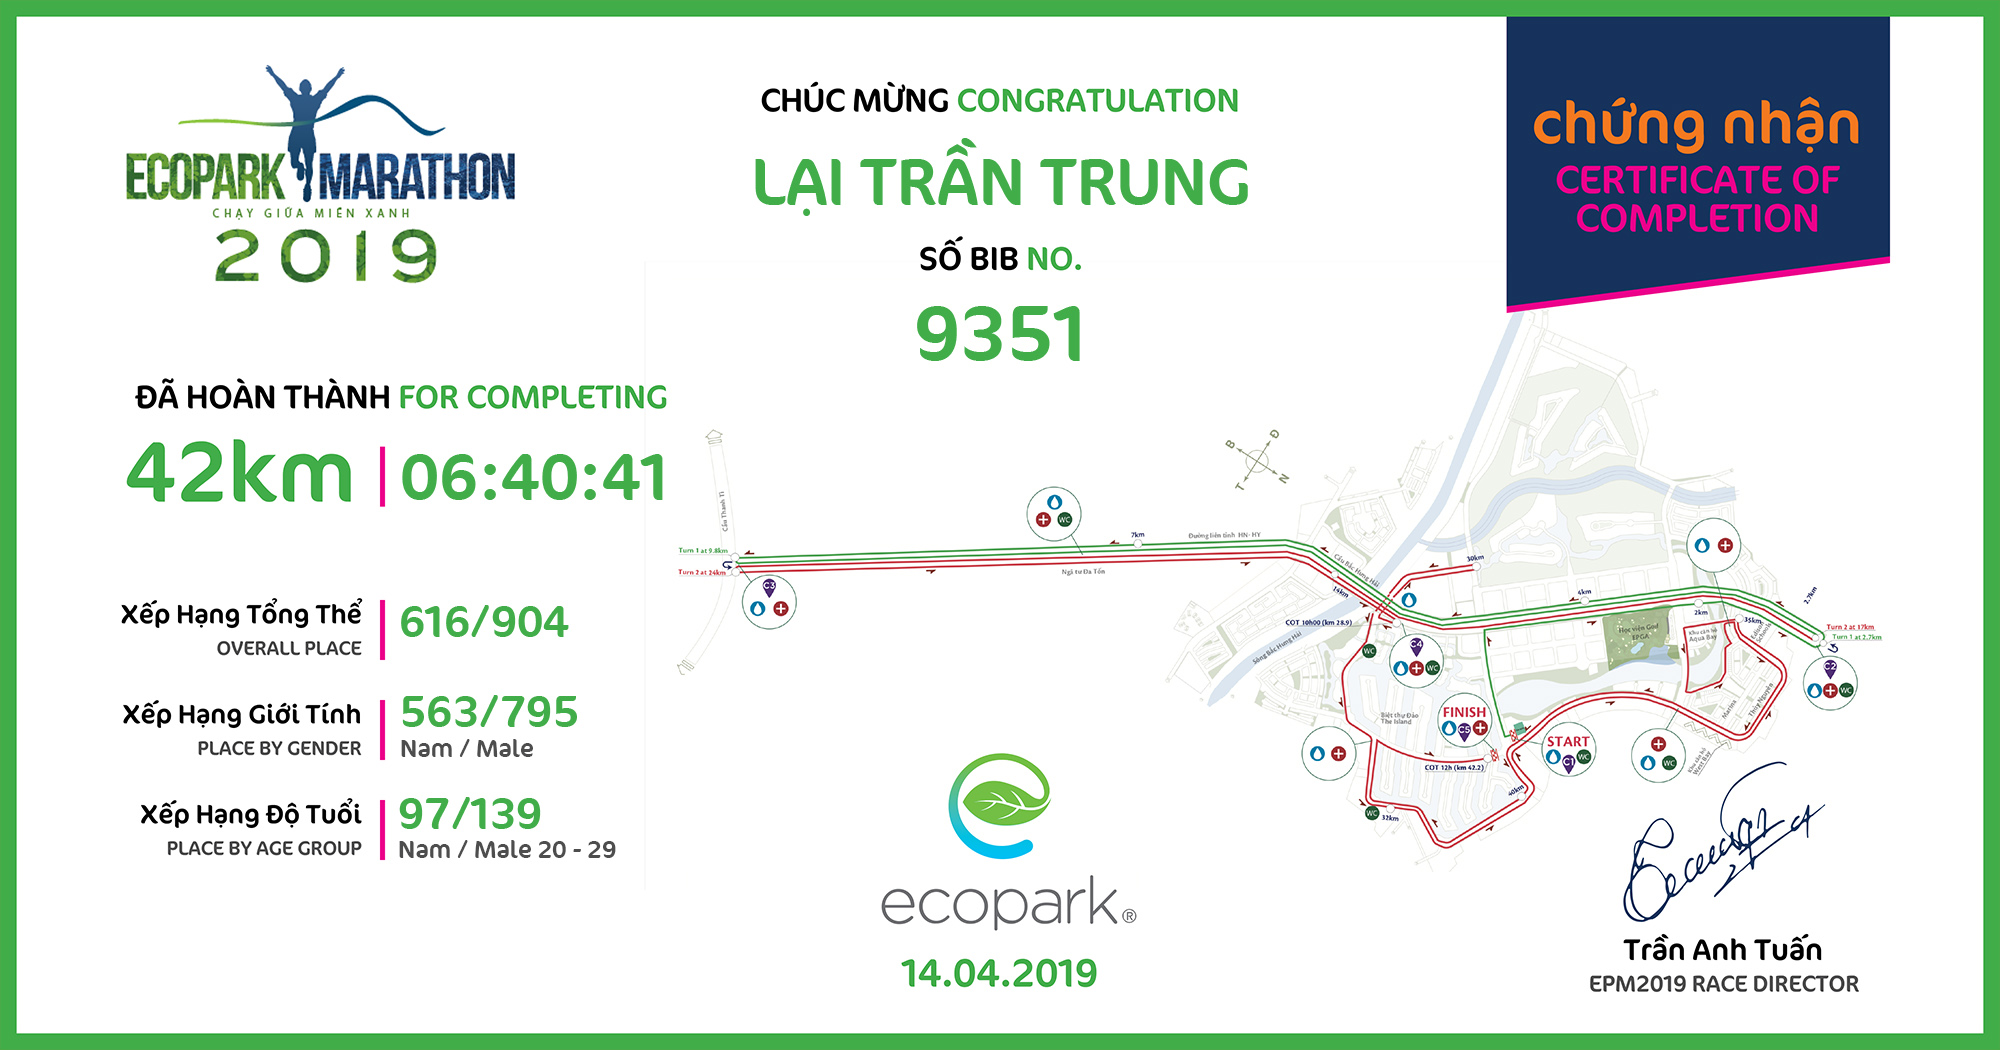 9351 - Lại Trần Trung